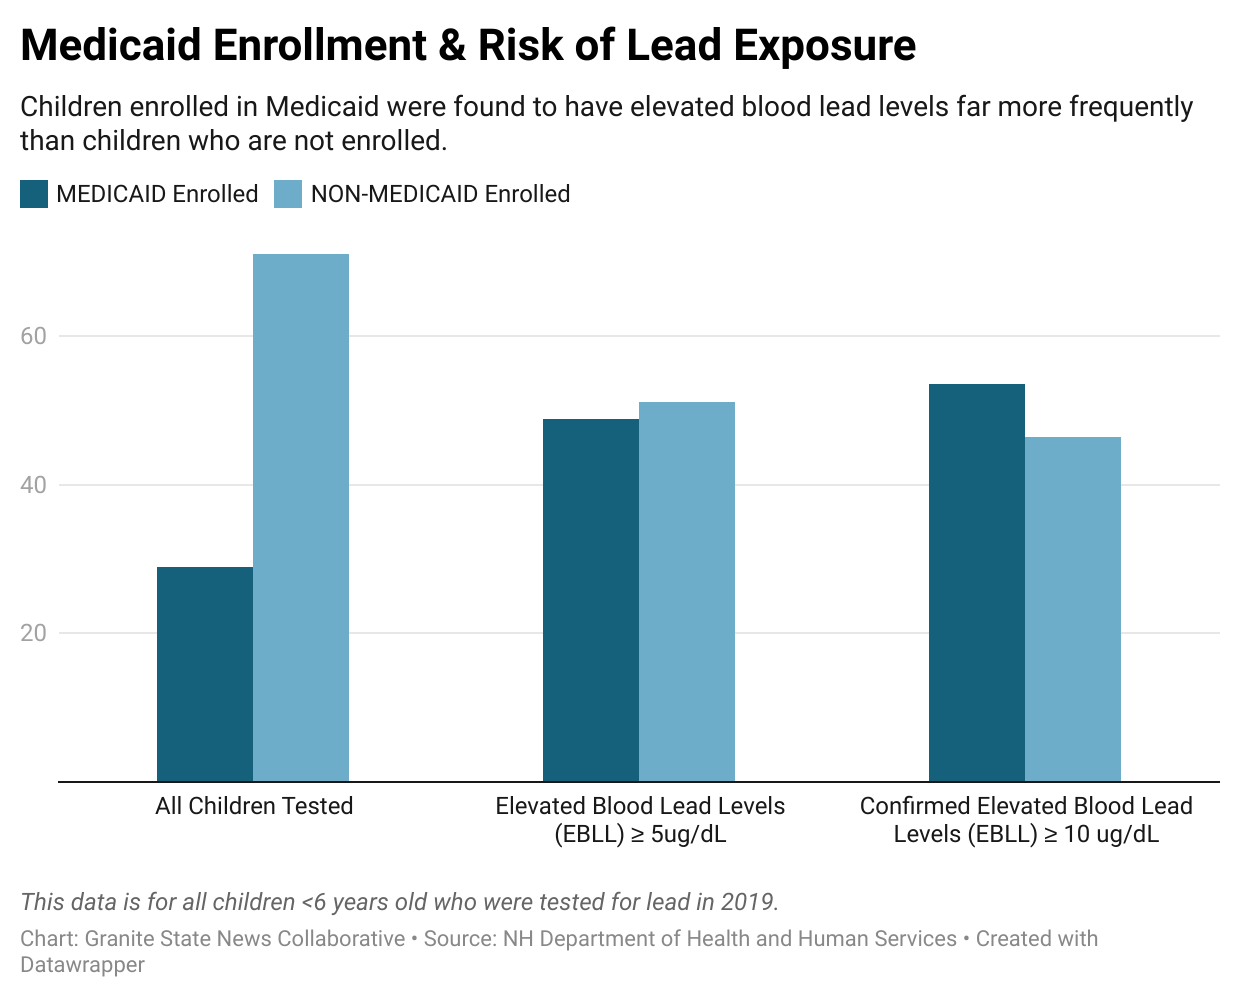 i7l91-medicaid-enrollment-risk-of-lead-exposure.png